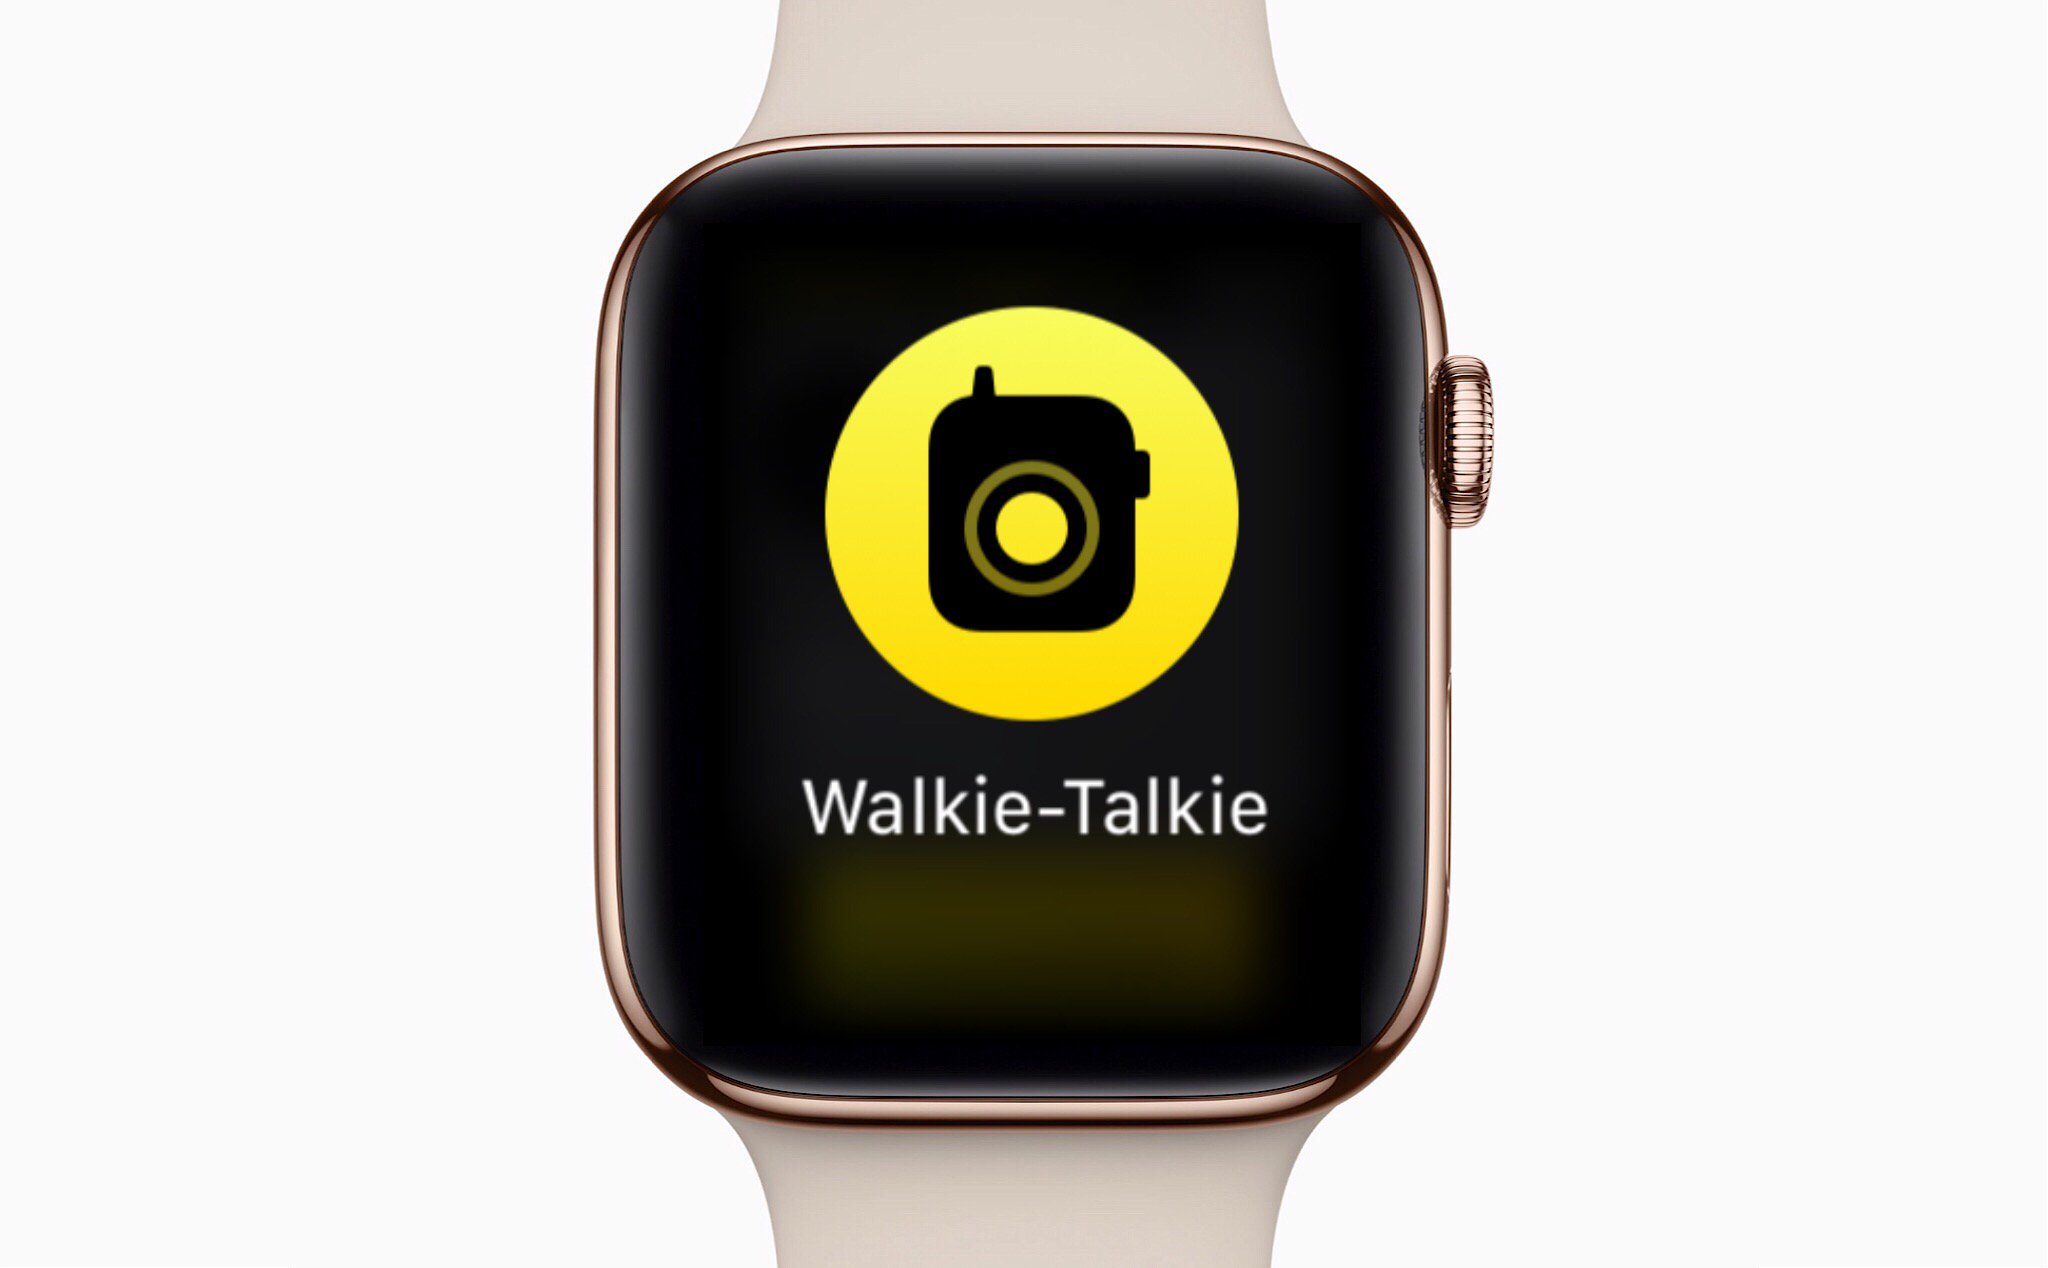 Walkie-Talkie, ứng dụng bộ đàm vui vẻ trên watchOS 5